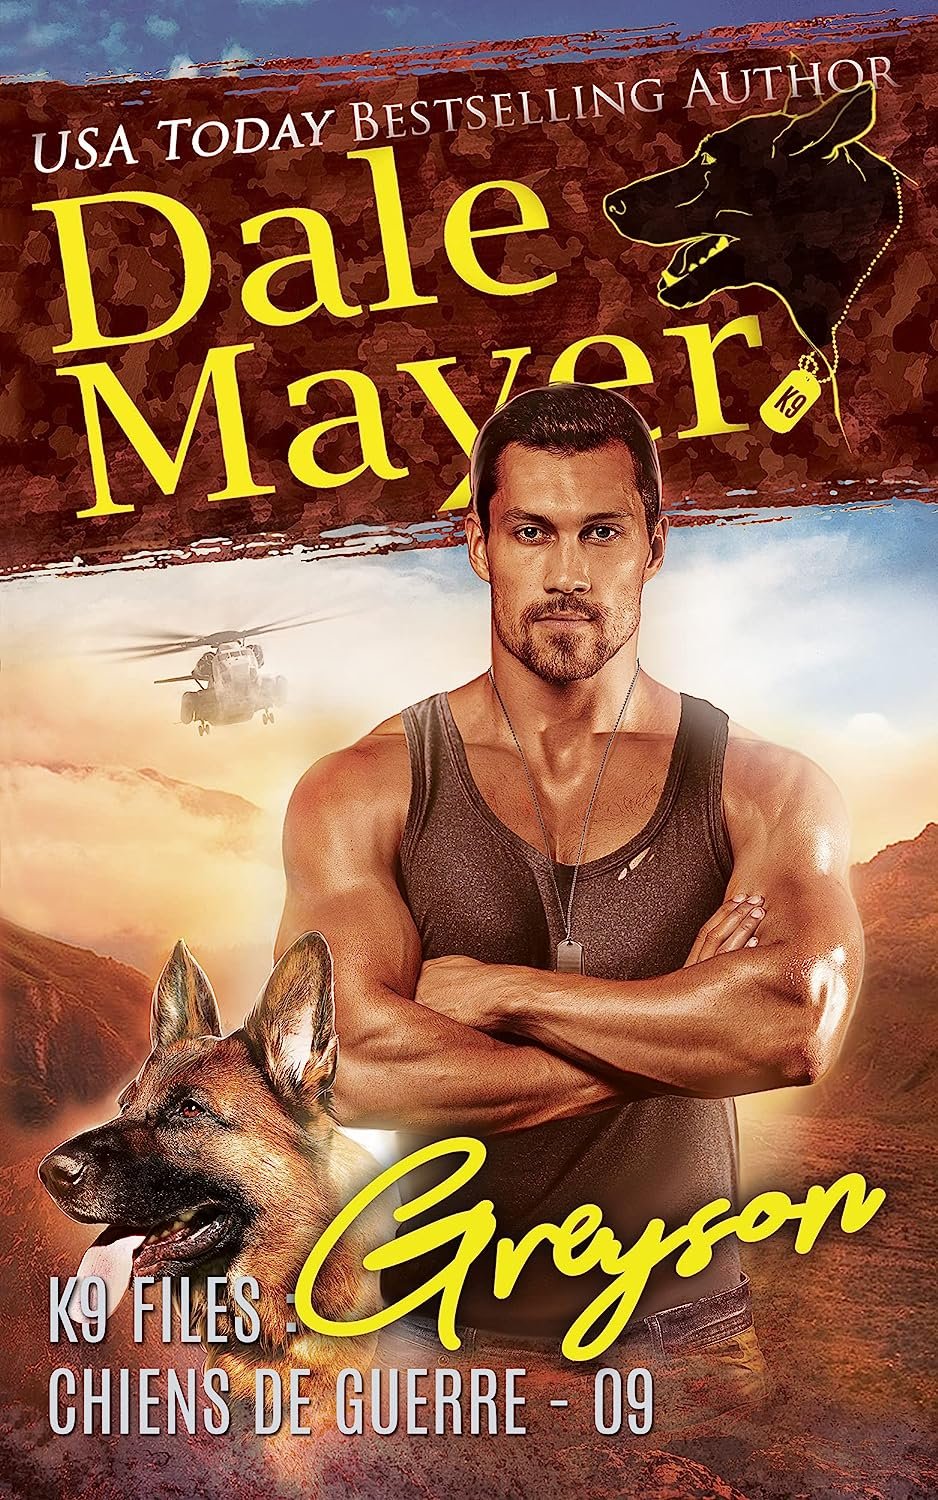 Dale Mayer - K9 files, chiens de guerre Tome 9 - Greyson